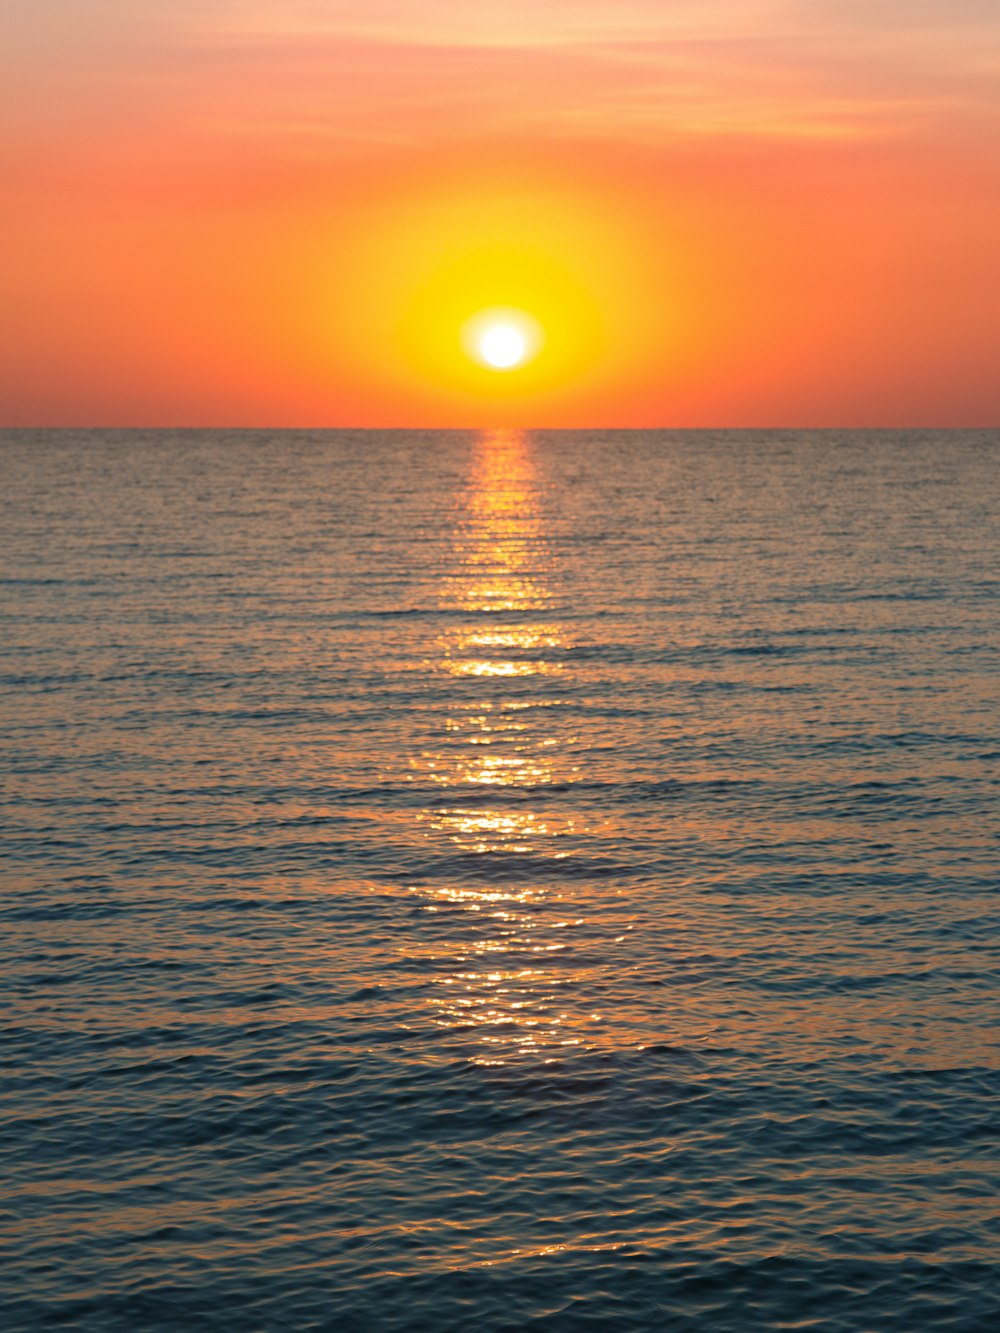 Il sole sta tramontando sull'oceano con una barca in acqua